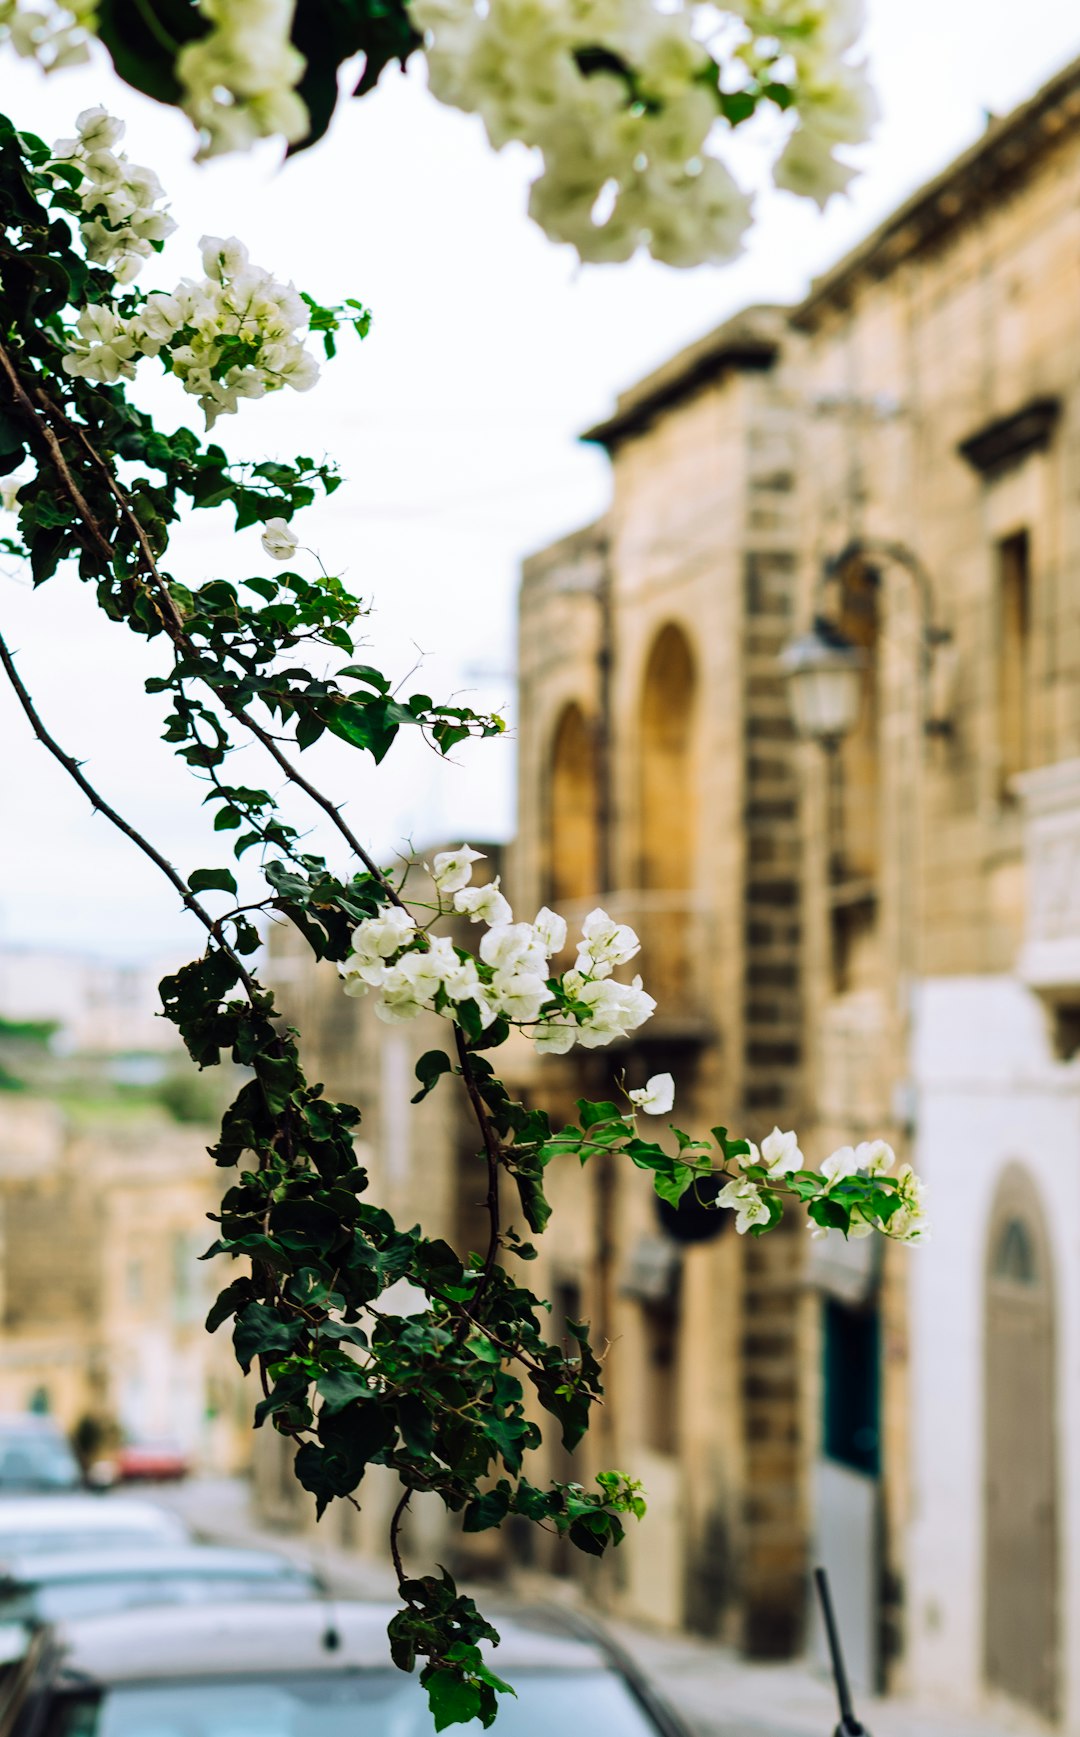 Architecture photo spot Gozo Malta